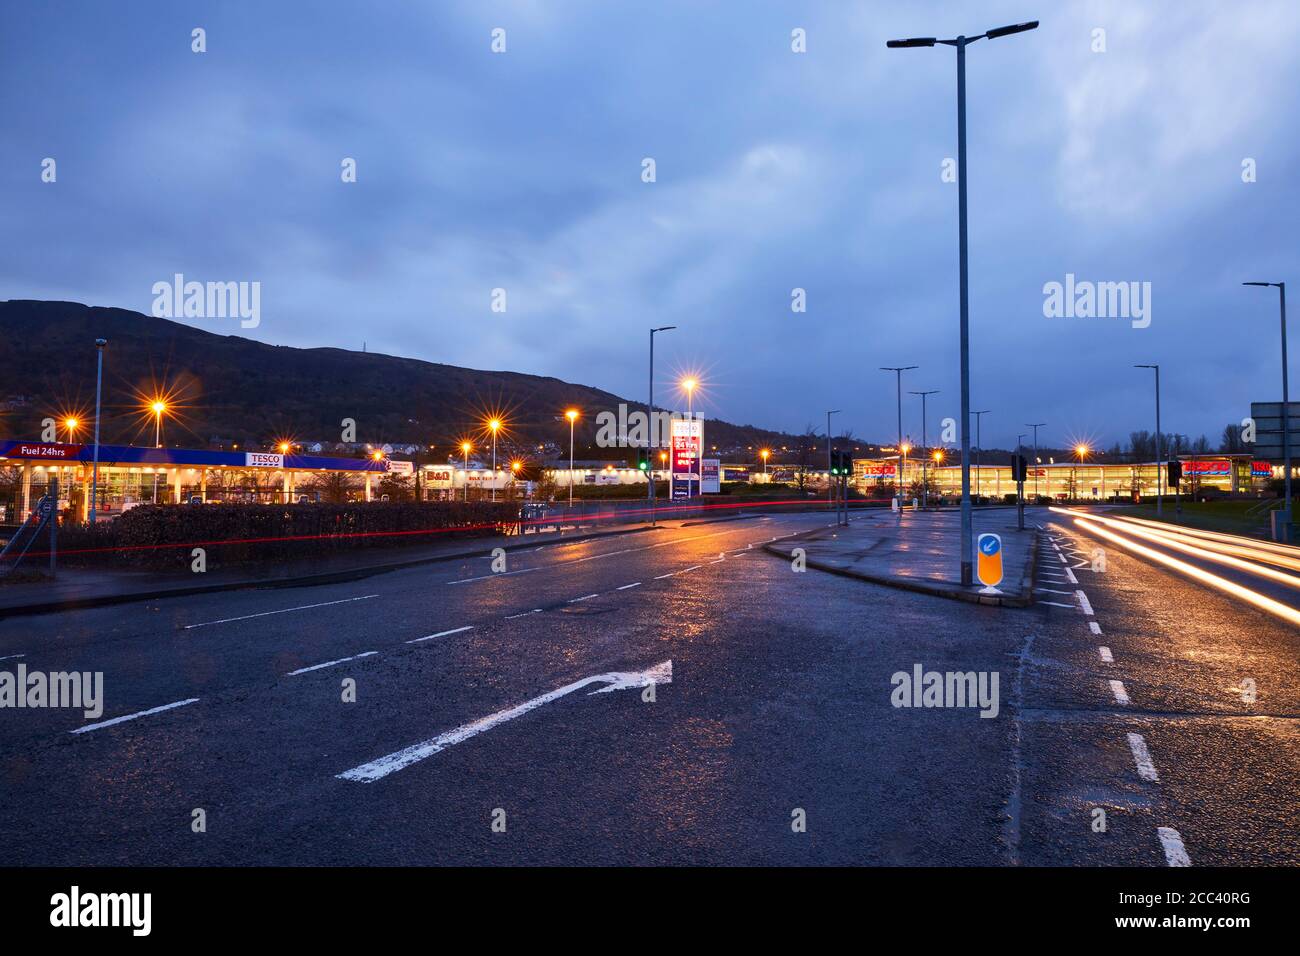 Ingresso del parcheggio. Abbey Retail Park, Belfast, Belfast, Irlanda. Architetto: N/A, 2019. Foto Stock